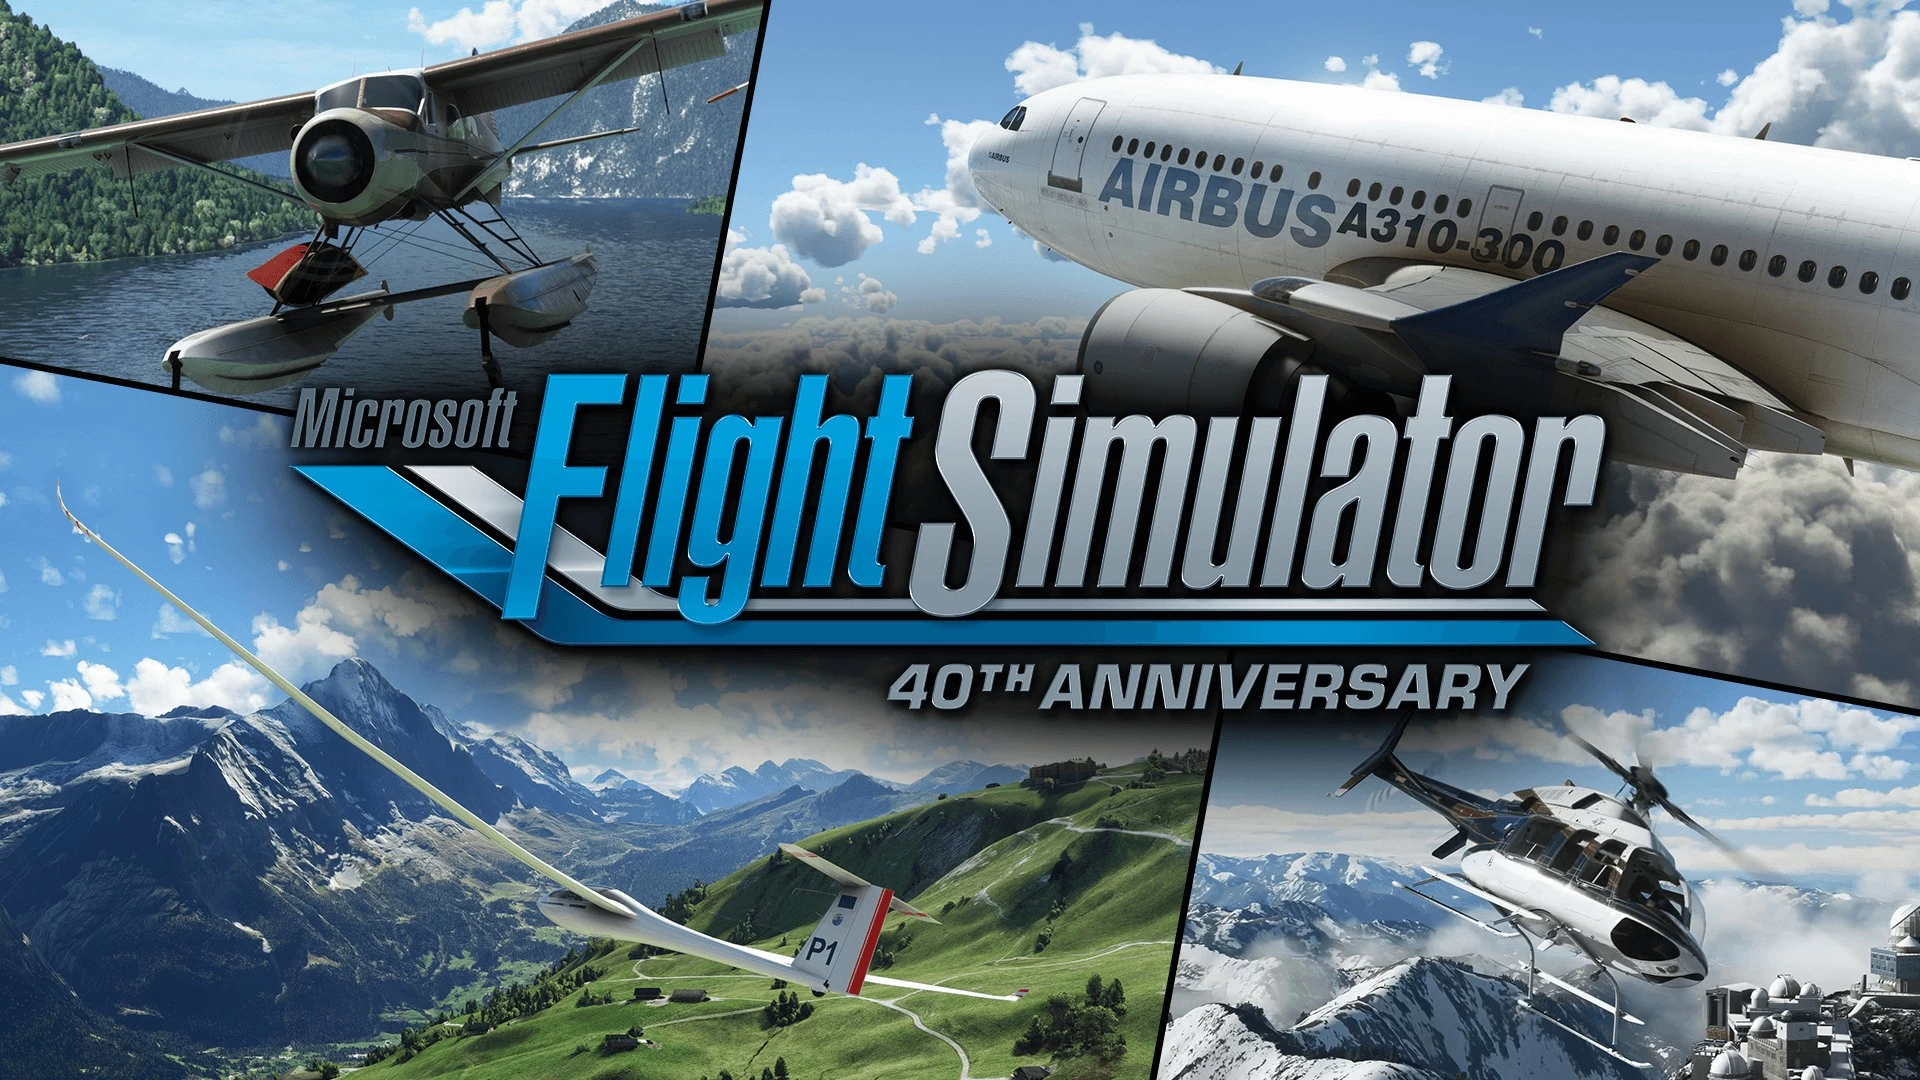 لعبة Microsoft Flight Simulator 2020